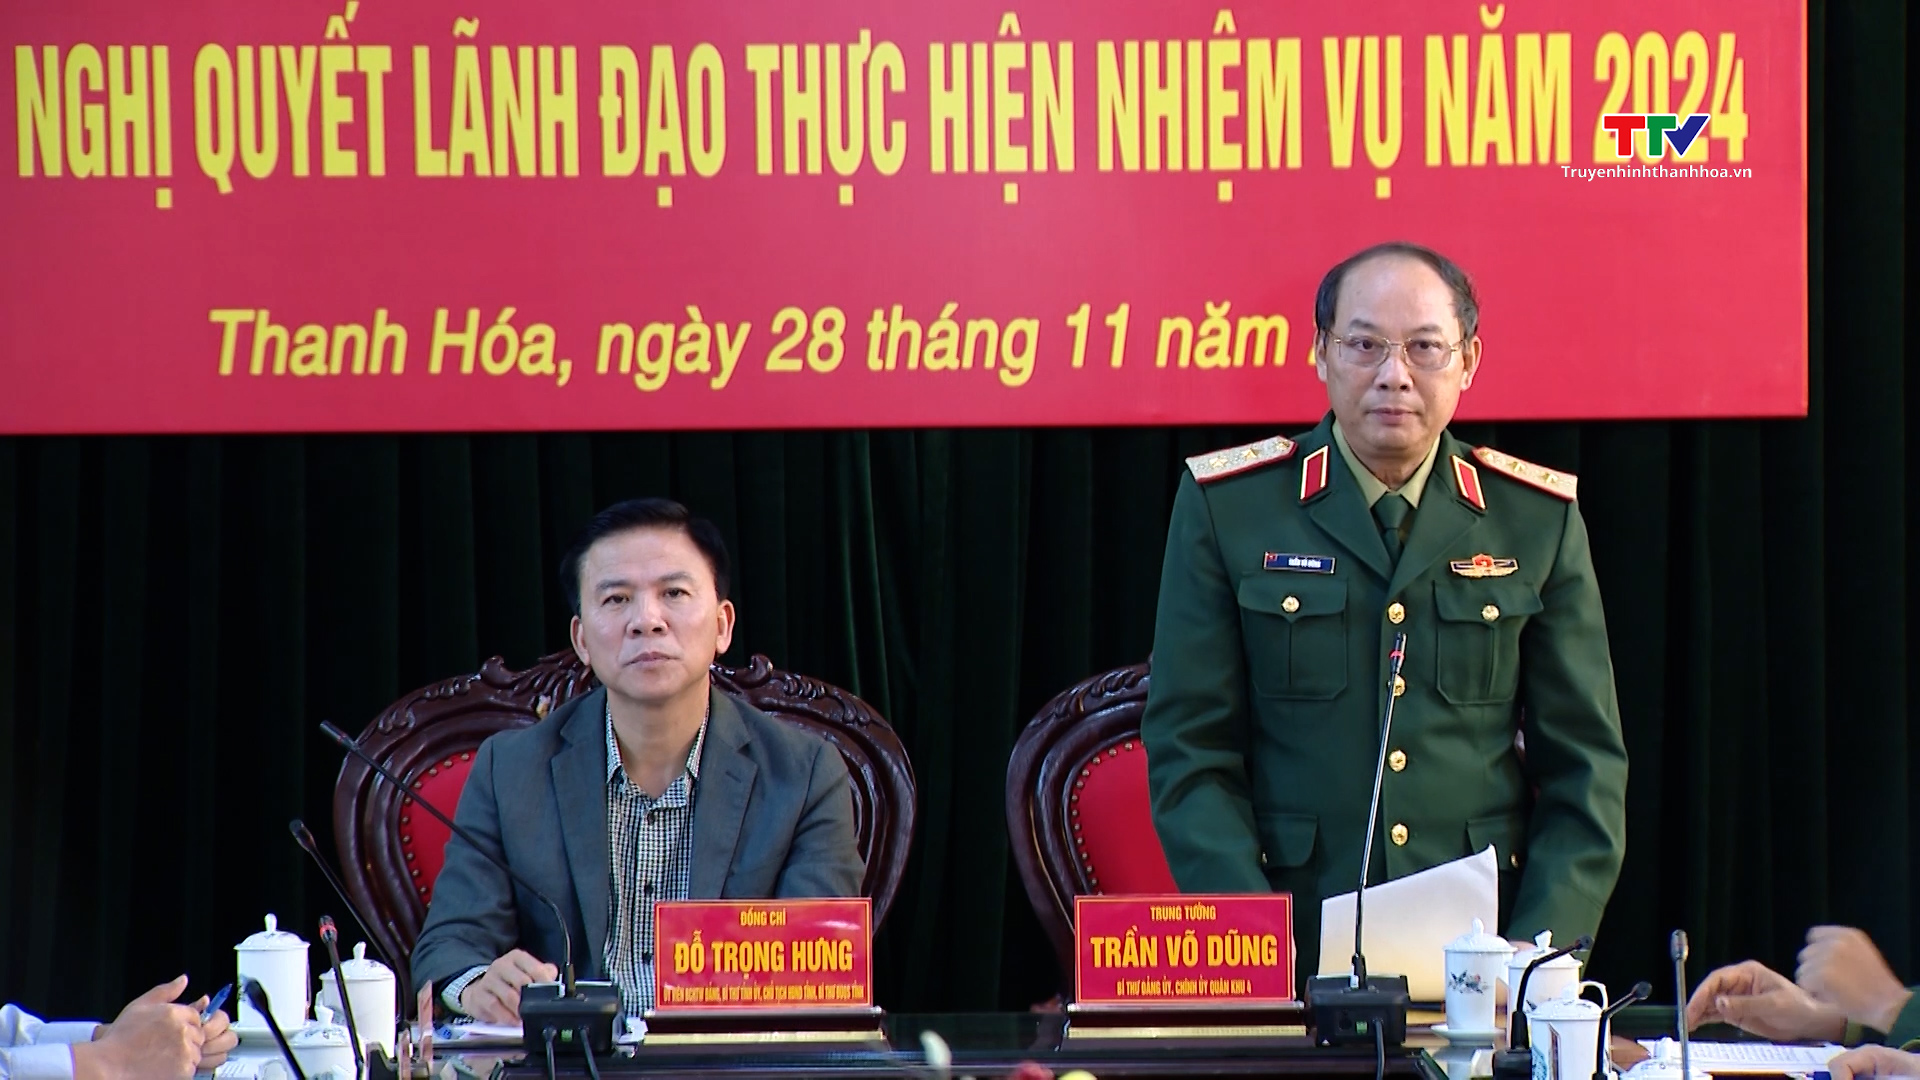 Đảng ủy Quân sự tỉnh ra nghị quyết lãnh đạo thực hiện nhiệm vụ năm 2024- Ảnh 2.